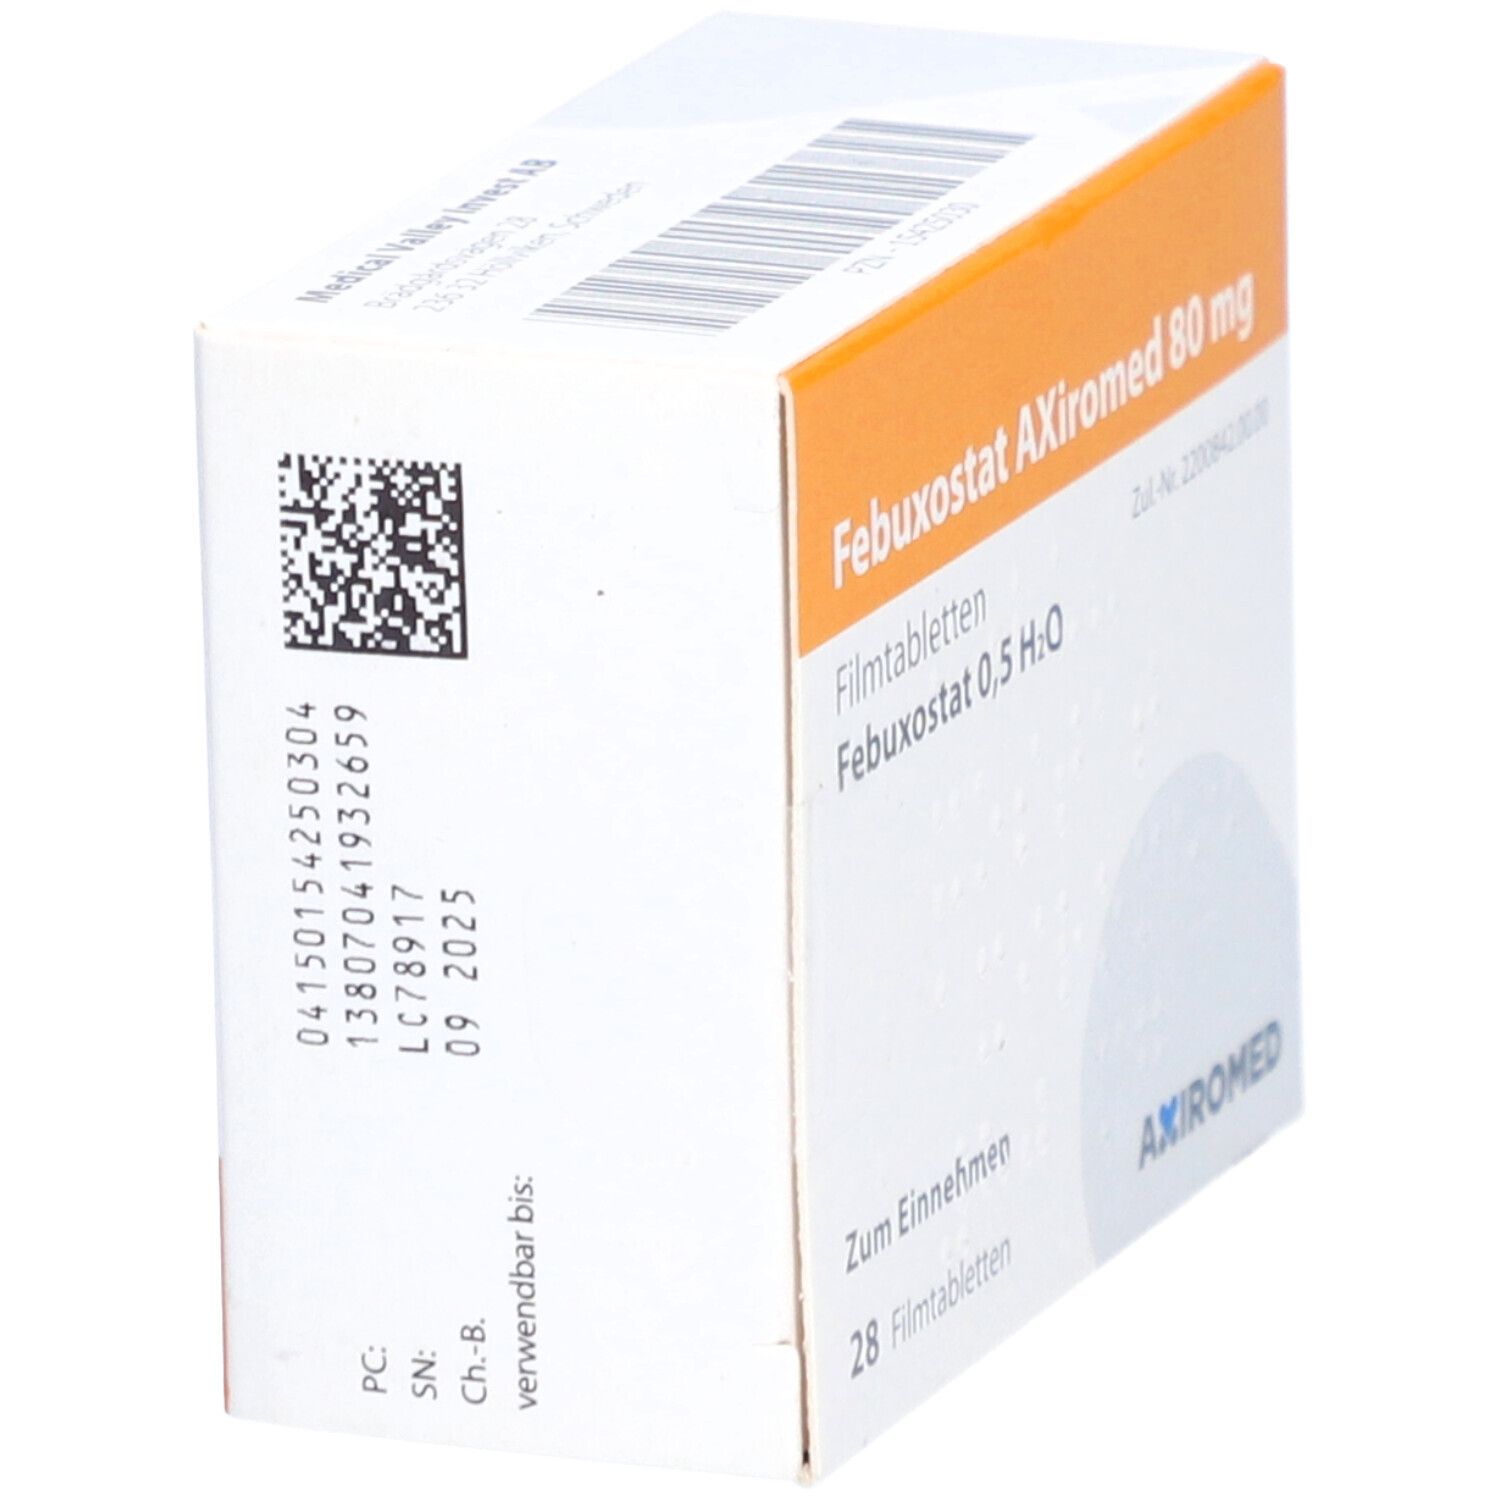 Febuxostat Axiromed 80 mg